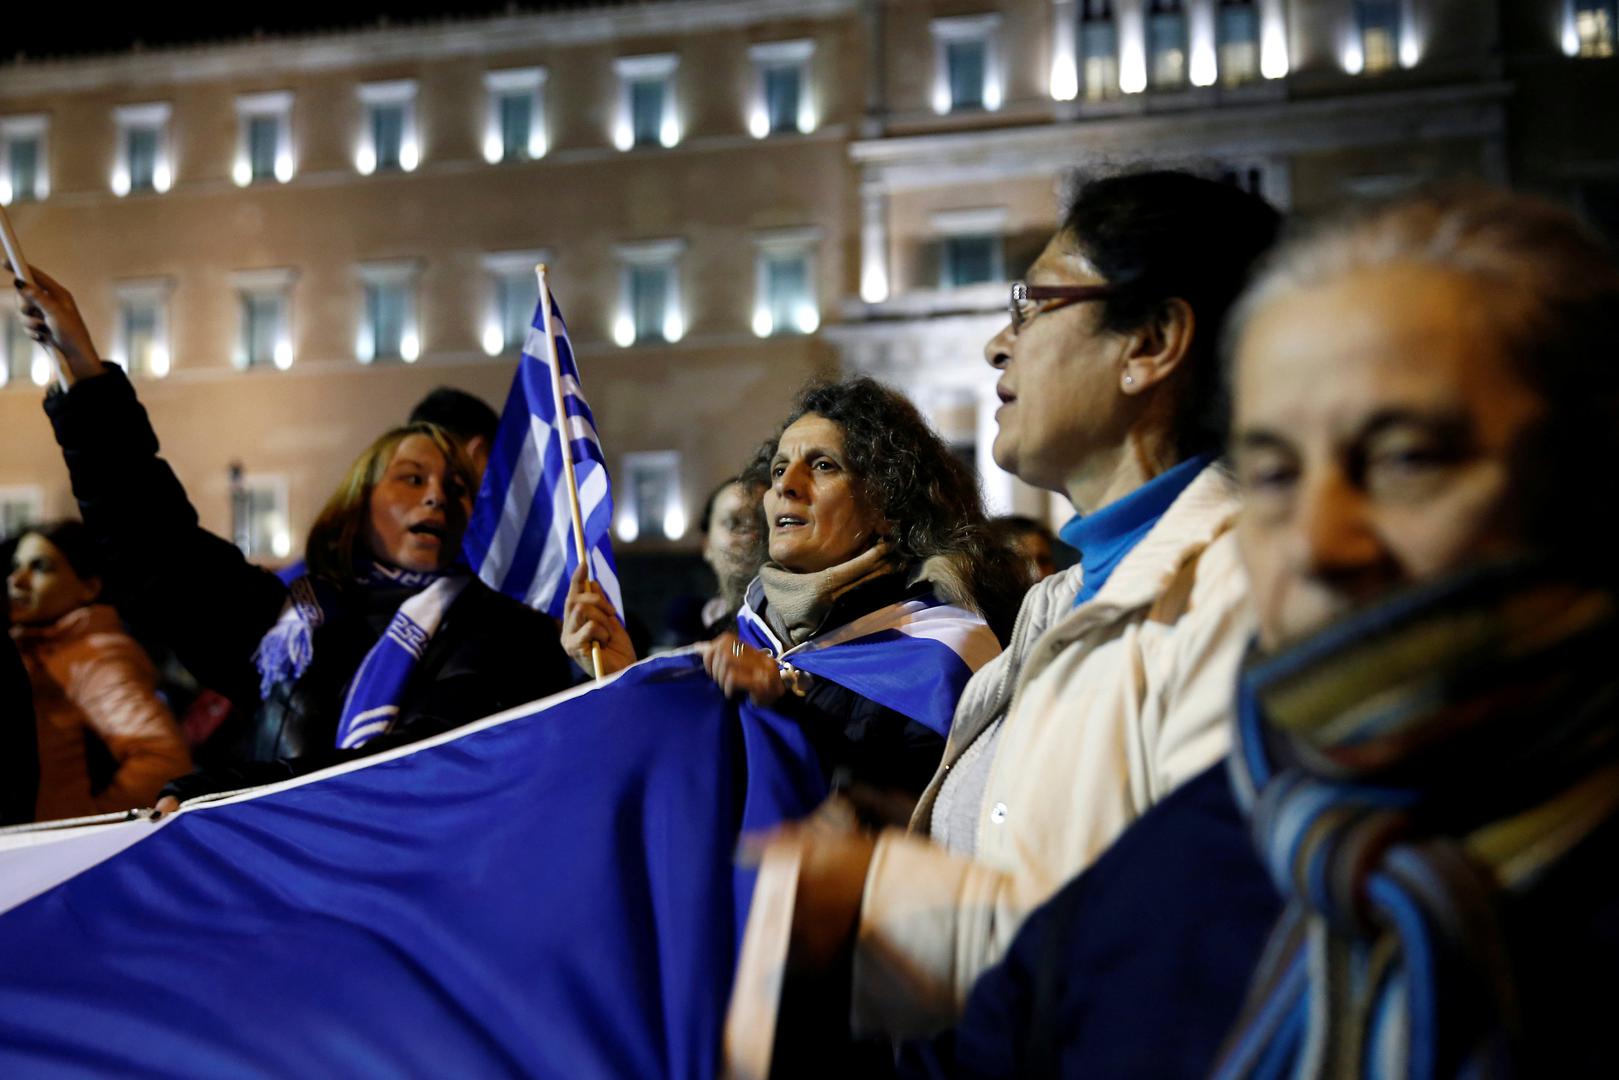 Zbog sporazuma je u nedjelju u Ateni prosvjedovalo više od 100 tisuća ljudi, a u četvrtak su prosvjedi ponovljeni, ali u manjem broju.